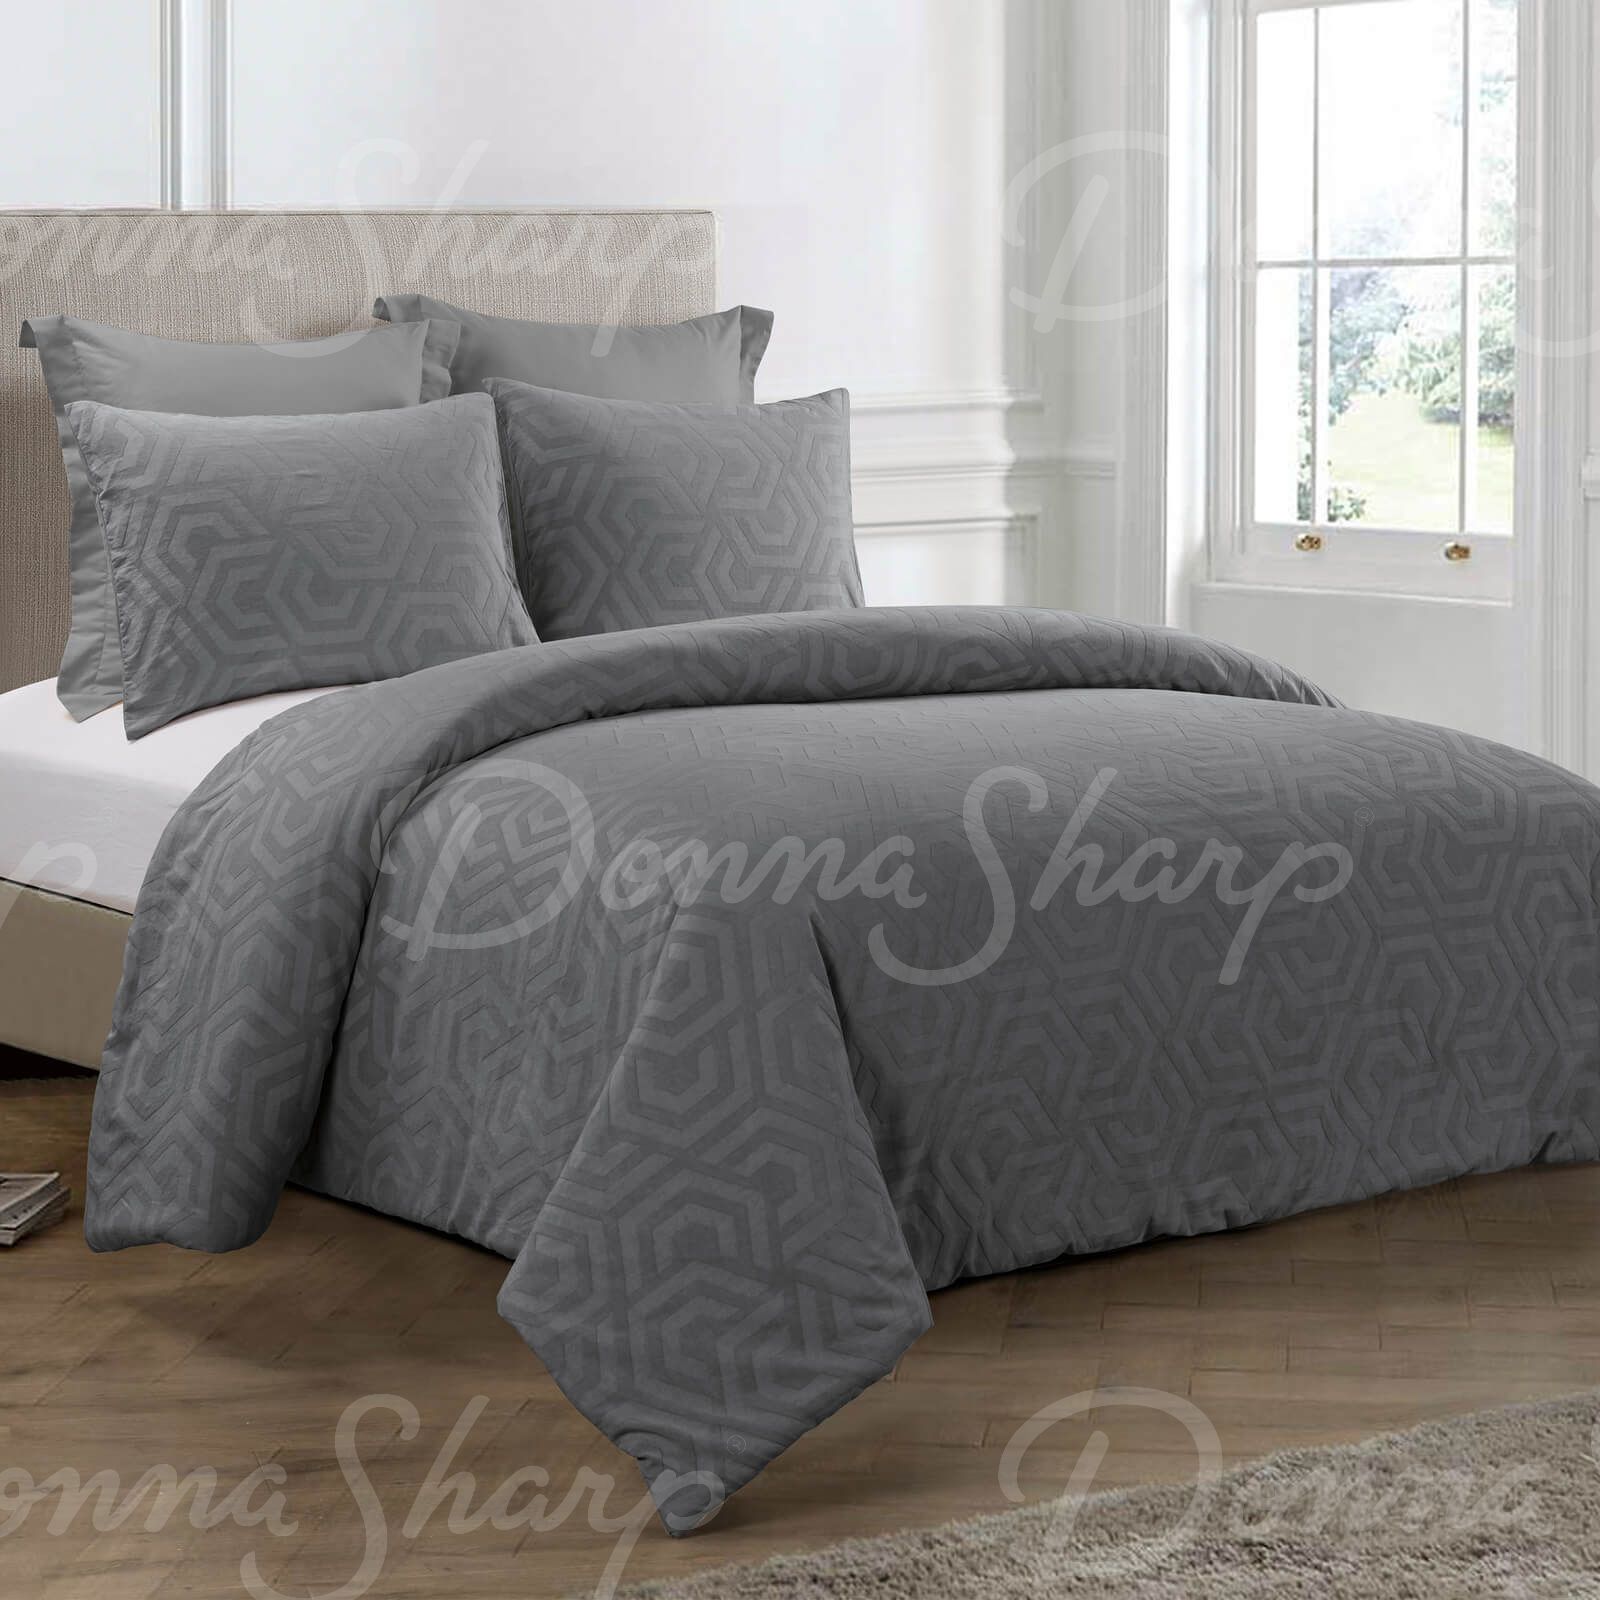 Details about   Donna Sharp Seville Comforter Set 